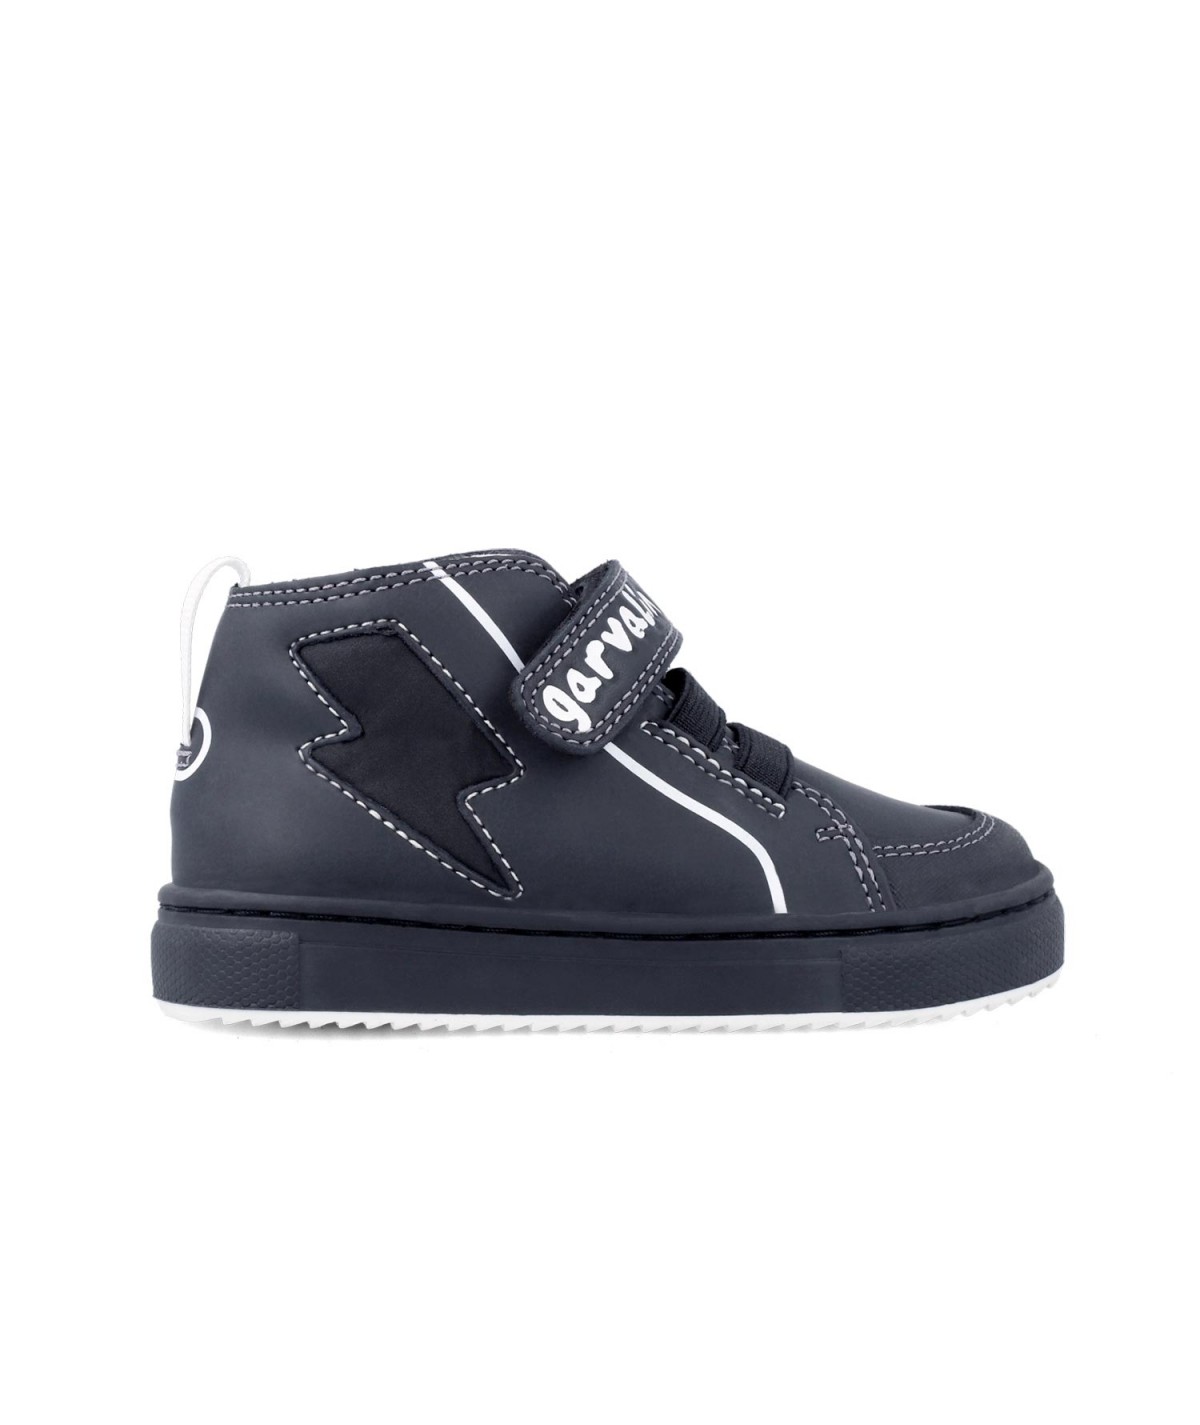 Sneakers haut noir et blanc